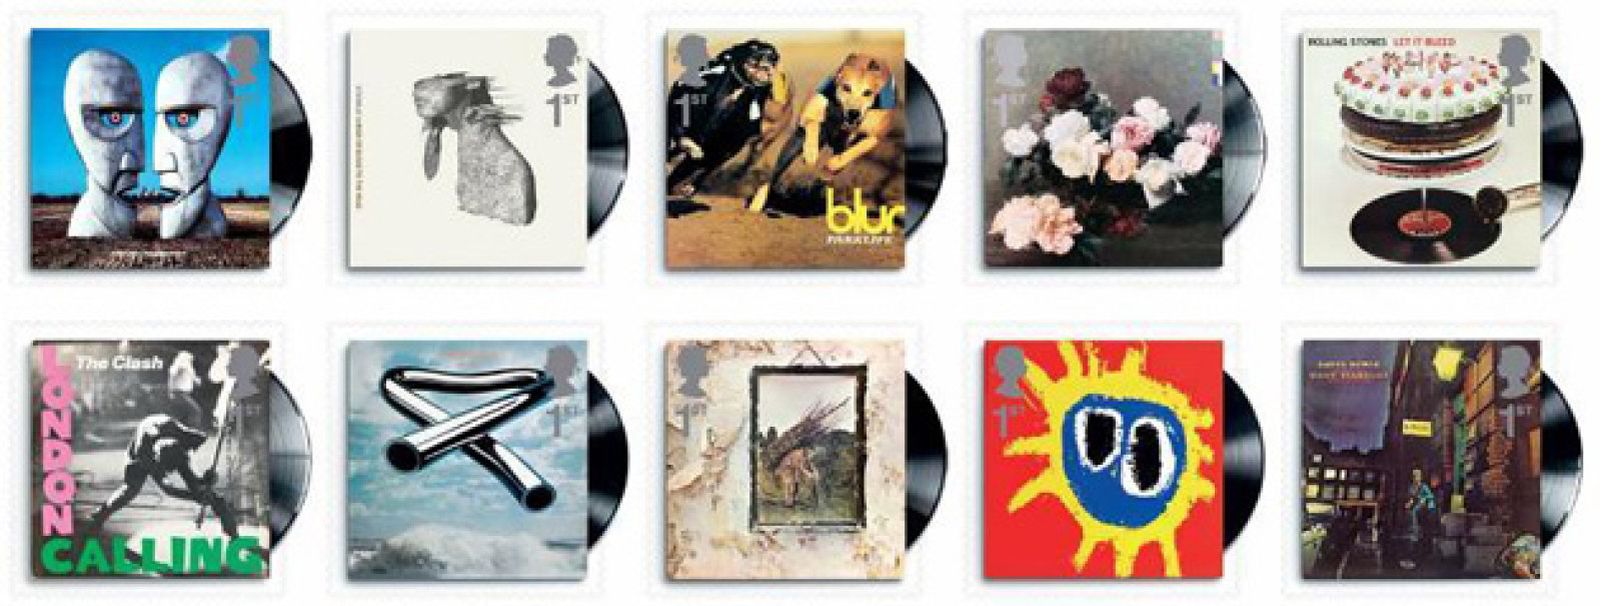 Foto: El Royal Mail convierte las carátulas de discos en sellos